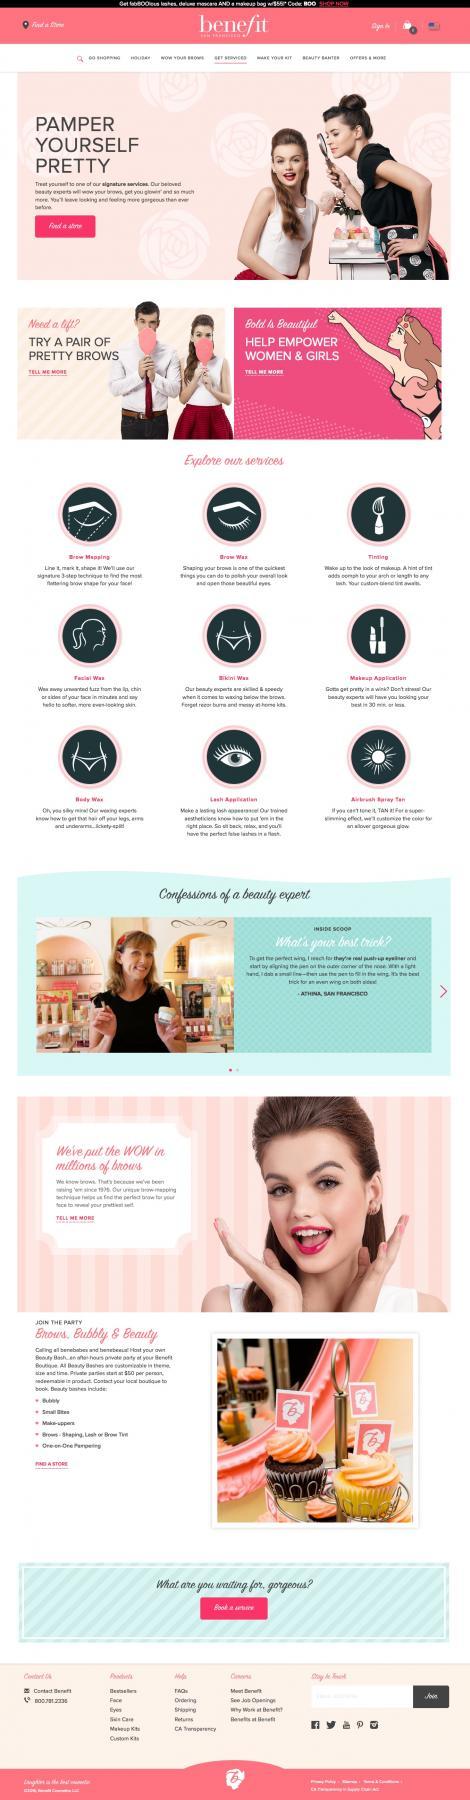 Benefit Cosmetics Case Study